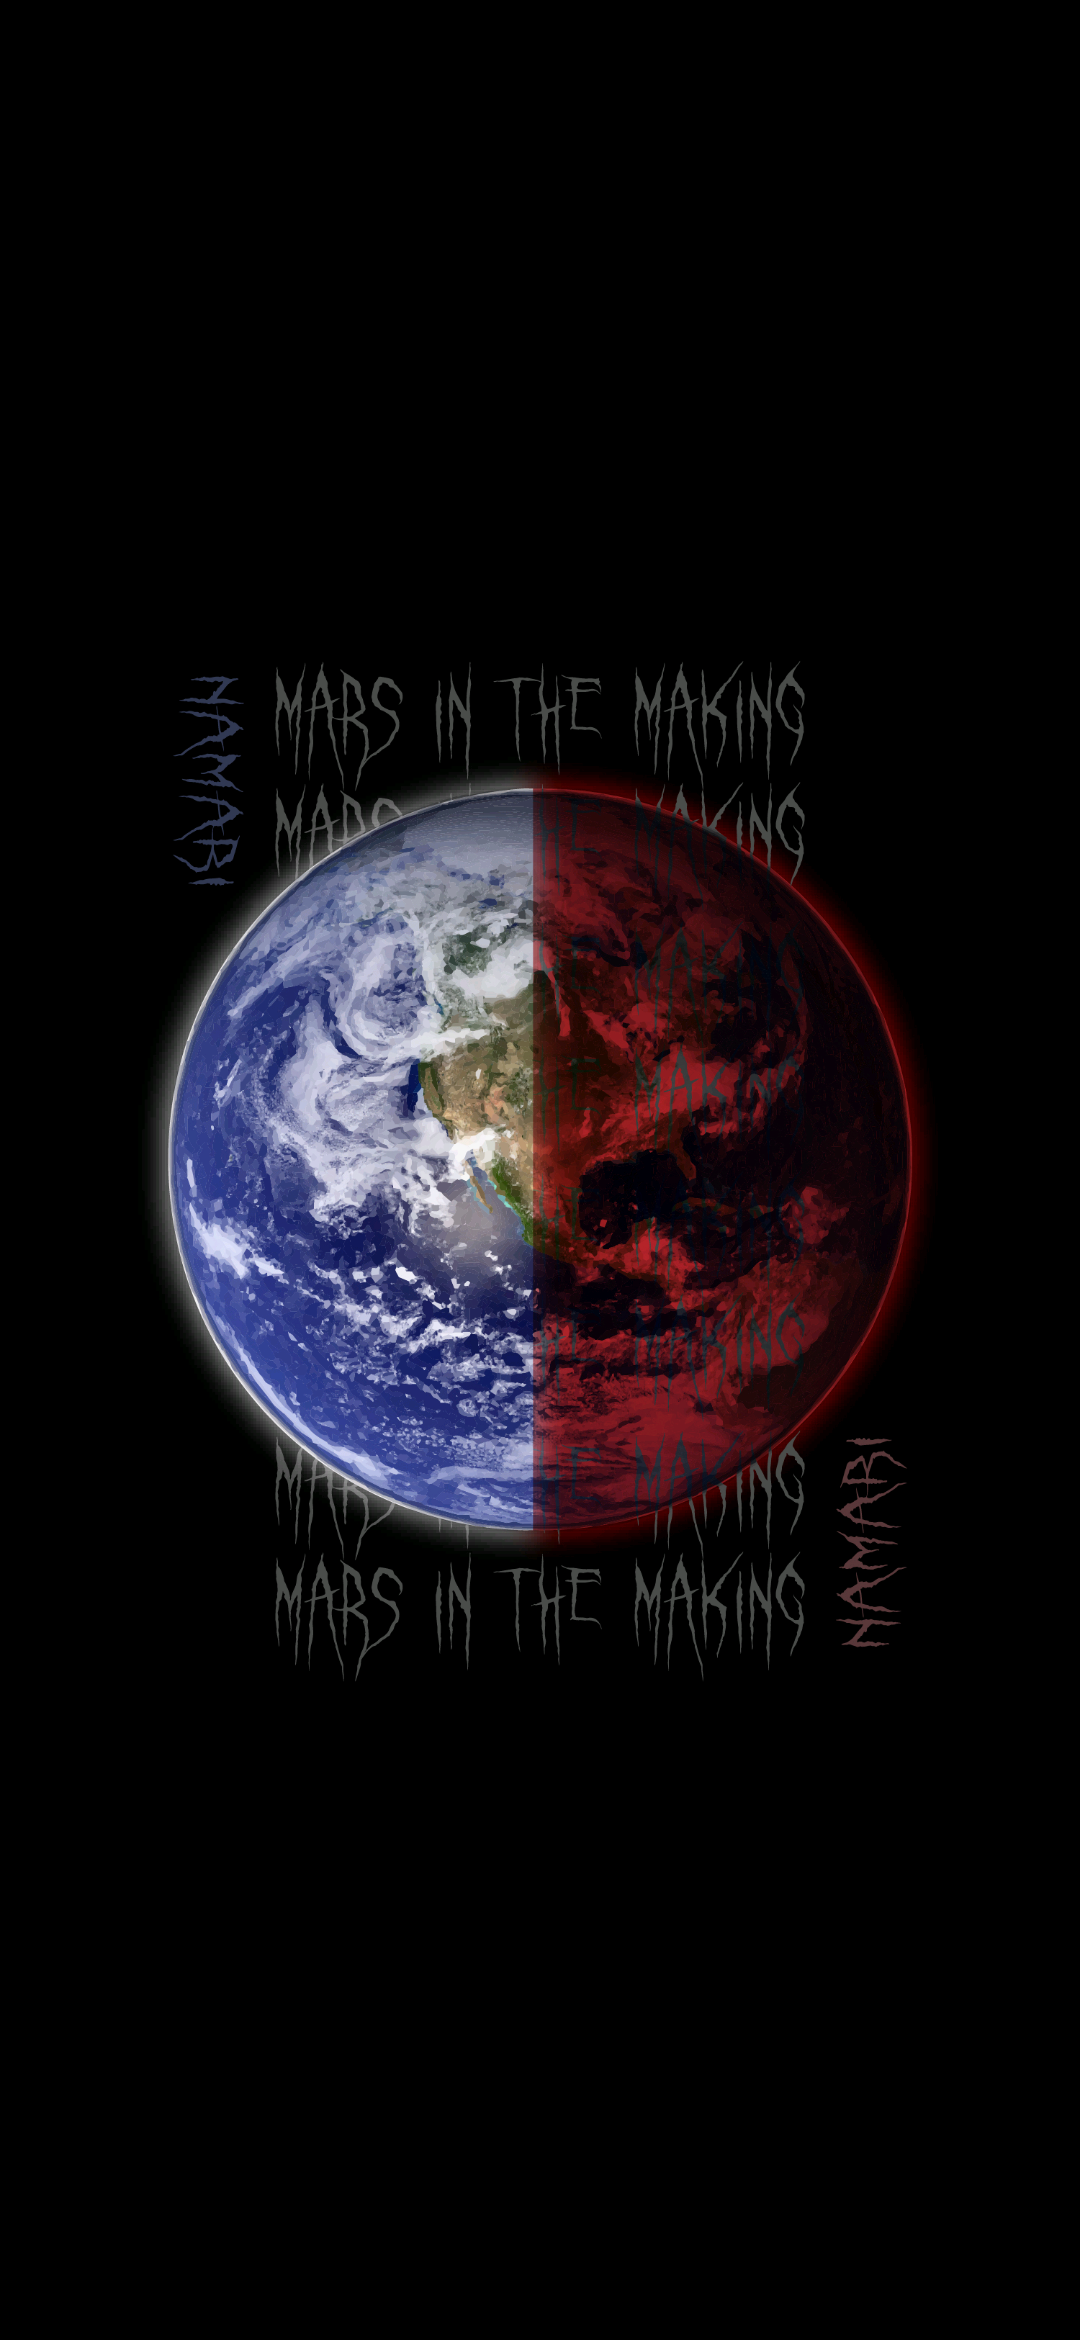 Mars in the Making Men’s premium heavyweight tee